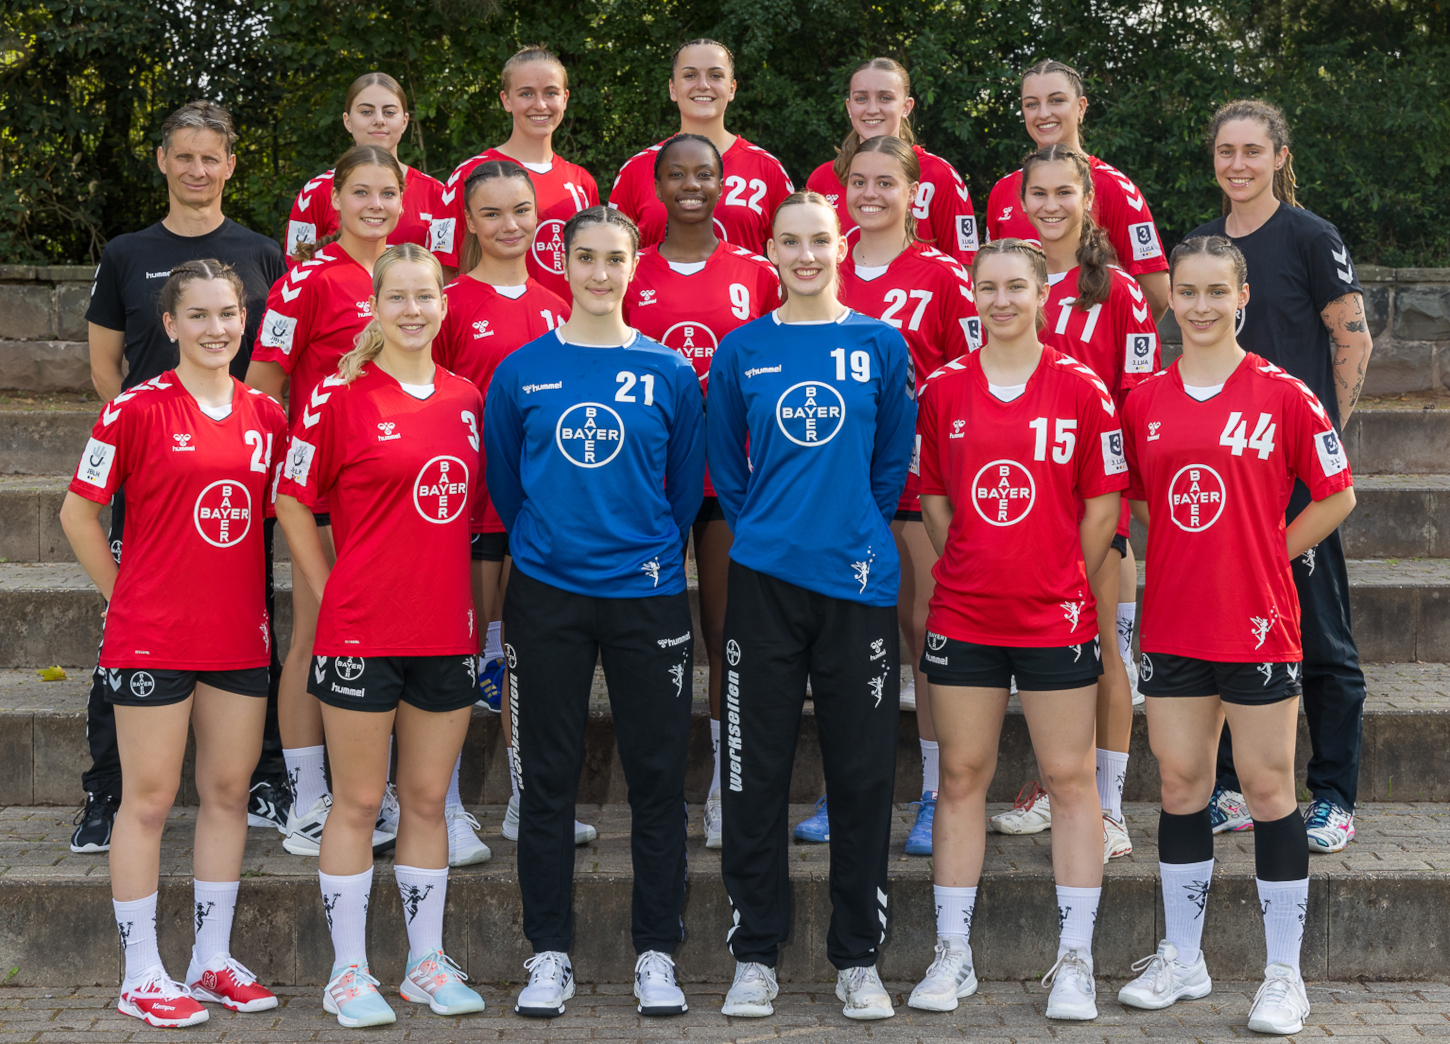 Hanballmannschaft des TSV Bayer 04 Leverkusen